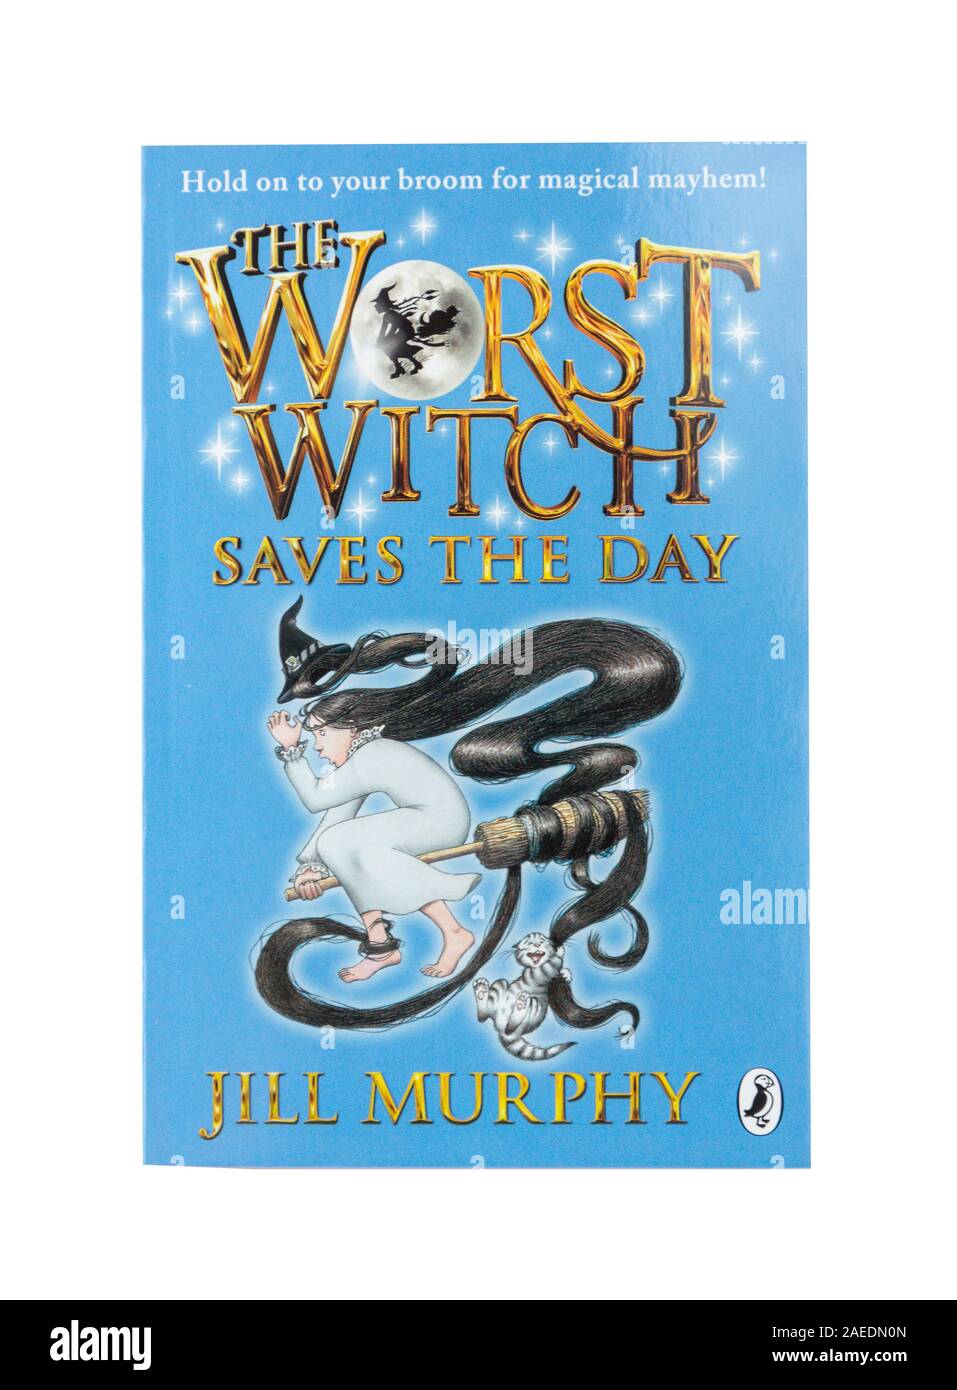 "La pire sorcière enregistre le jour' le livre d'enfants de Jill Murphy, Greater London, Angleterre, Royaume-Uni Banque D'Images